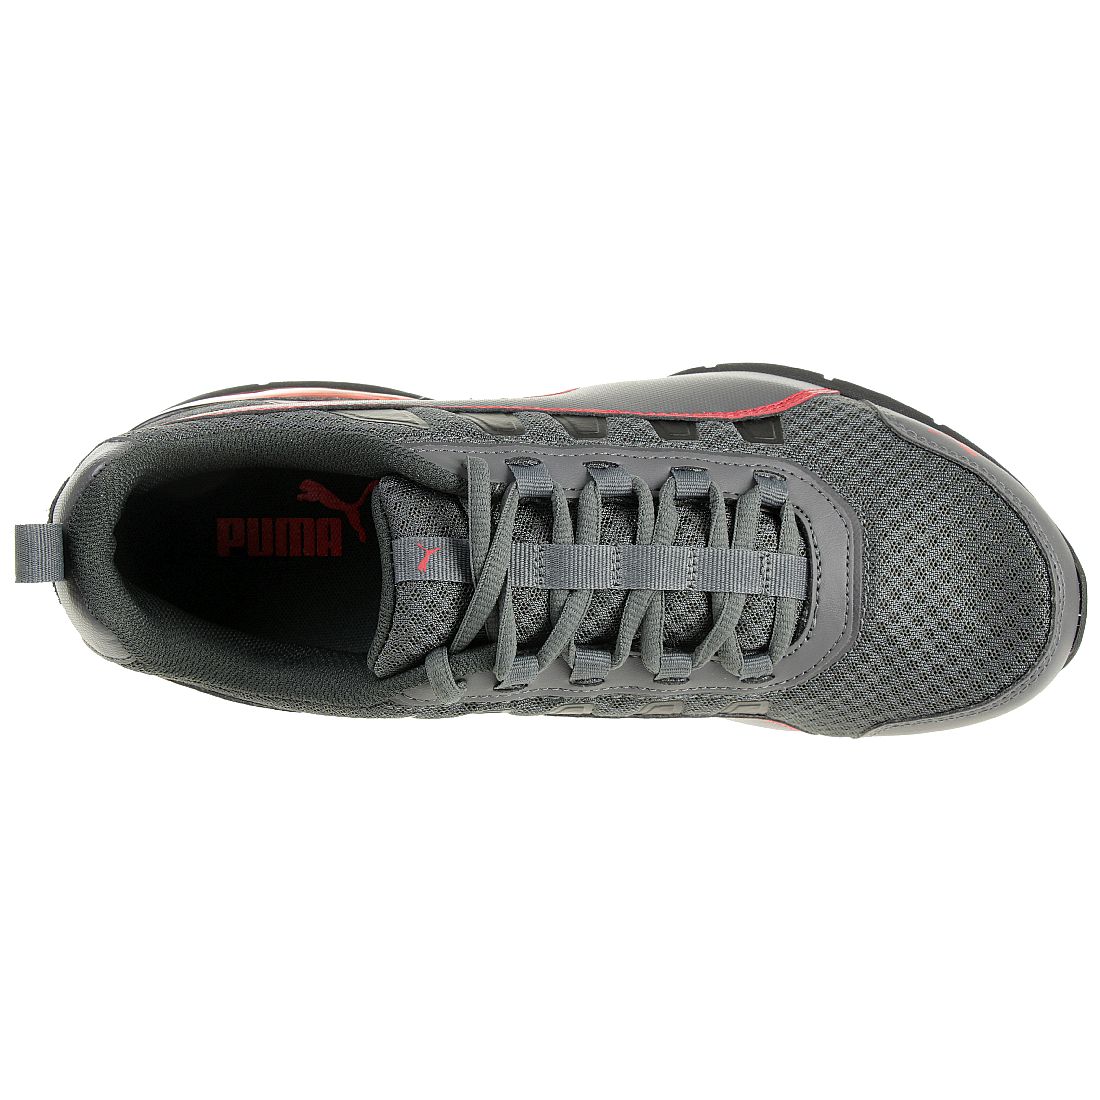 Puma Leader VT Mesh Unisex Sneaker Schuhe Laufschuhe 365292 01